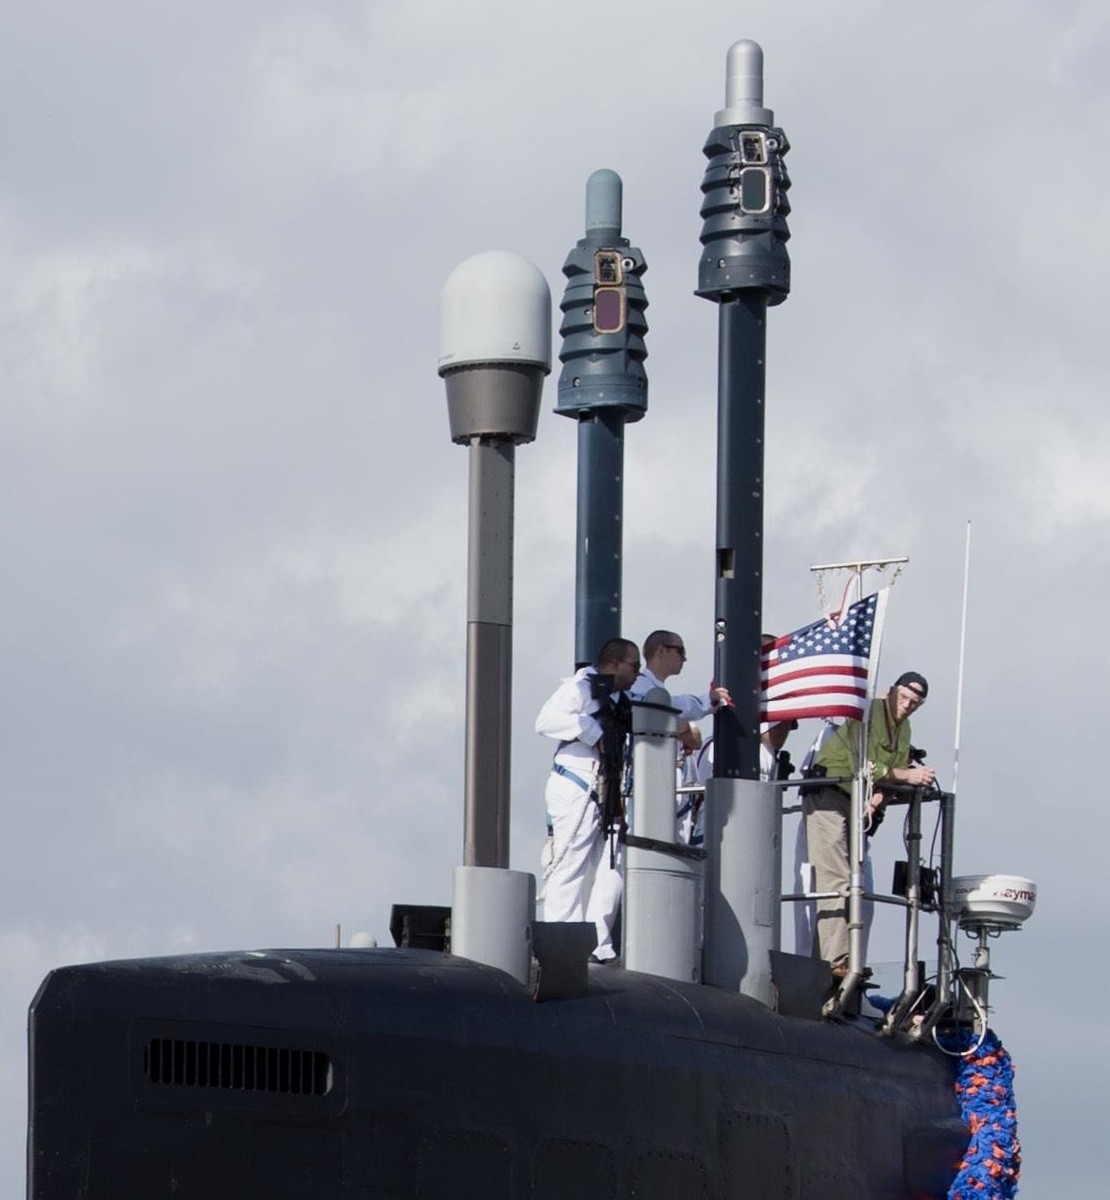 ssn-786 uss illinois virginia class attack submarine us navy 26a photonic mast antenna